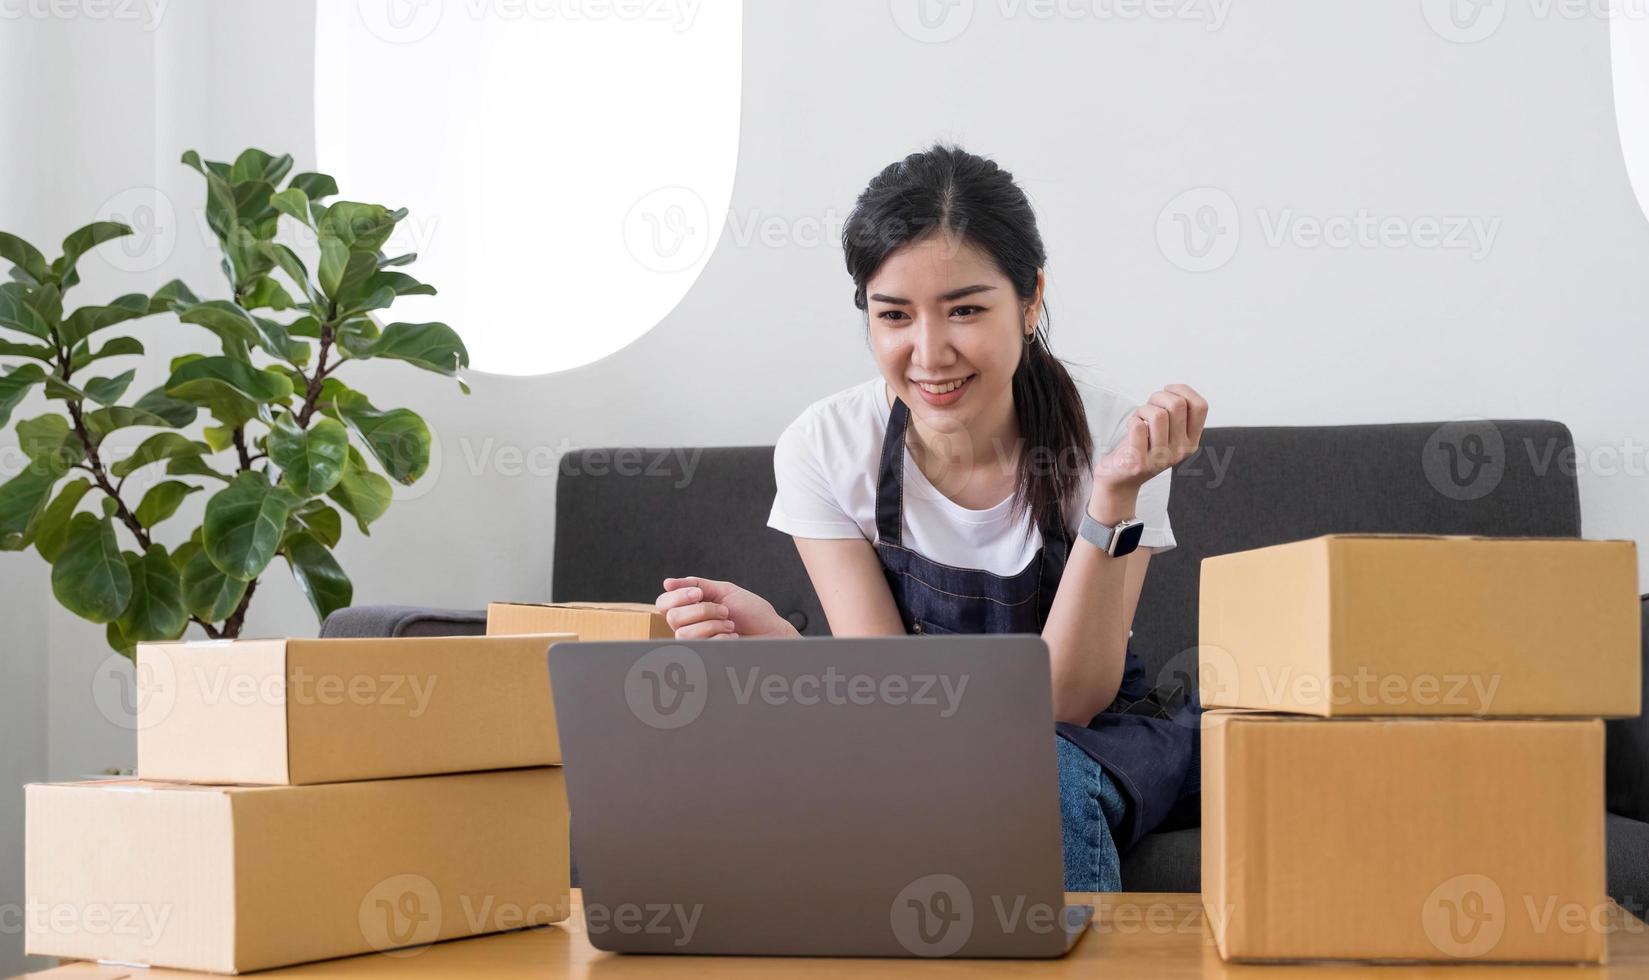 startup sme småföretag entreprenör av frilansande asiatisk kvinna som använder en bärbar dator med låda glad framgång asiatisk kvinna hennes hand lyfter upp onlinemarknadsföring förpackningslåda och leverans sme idékoncept foto